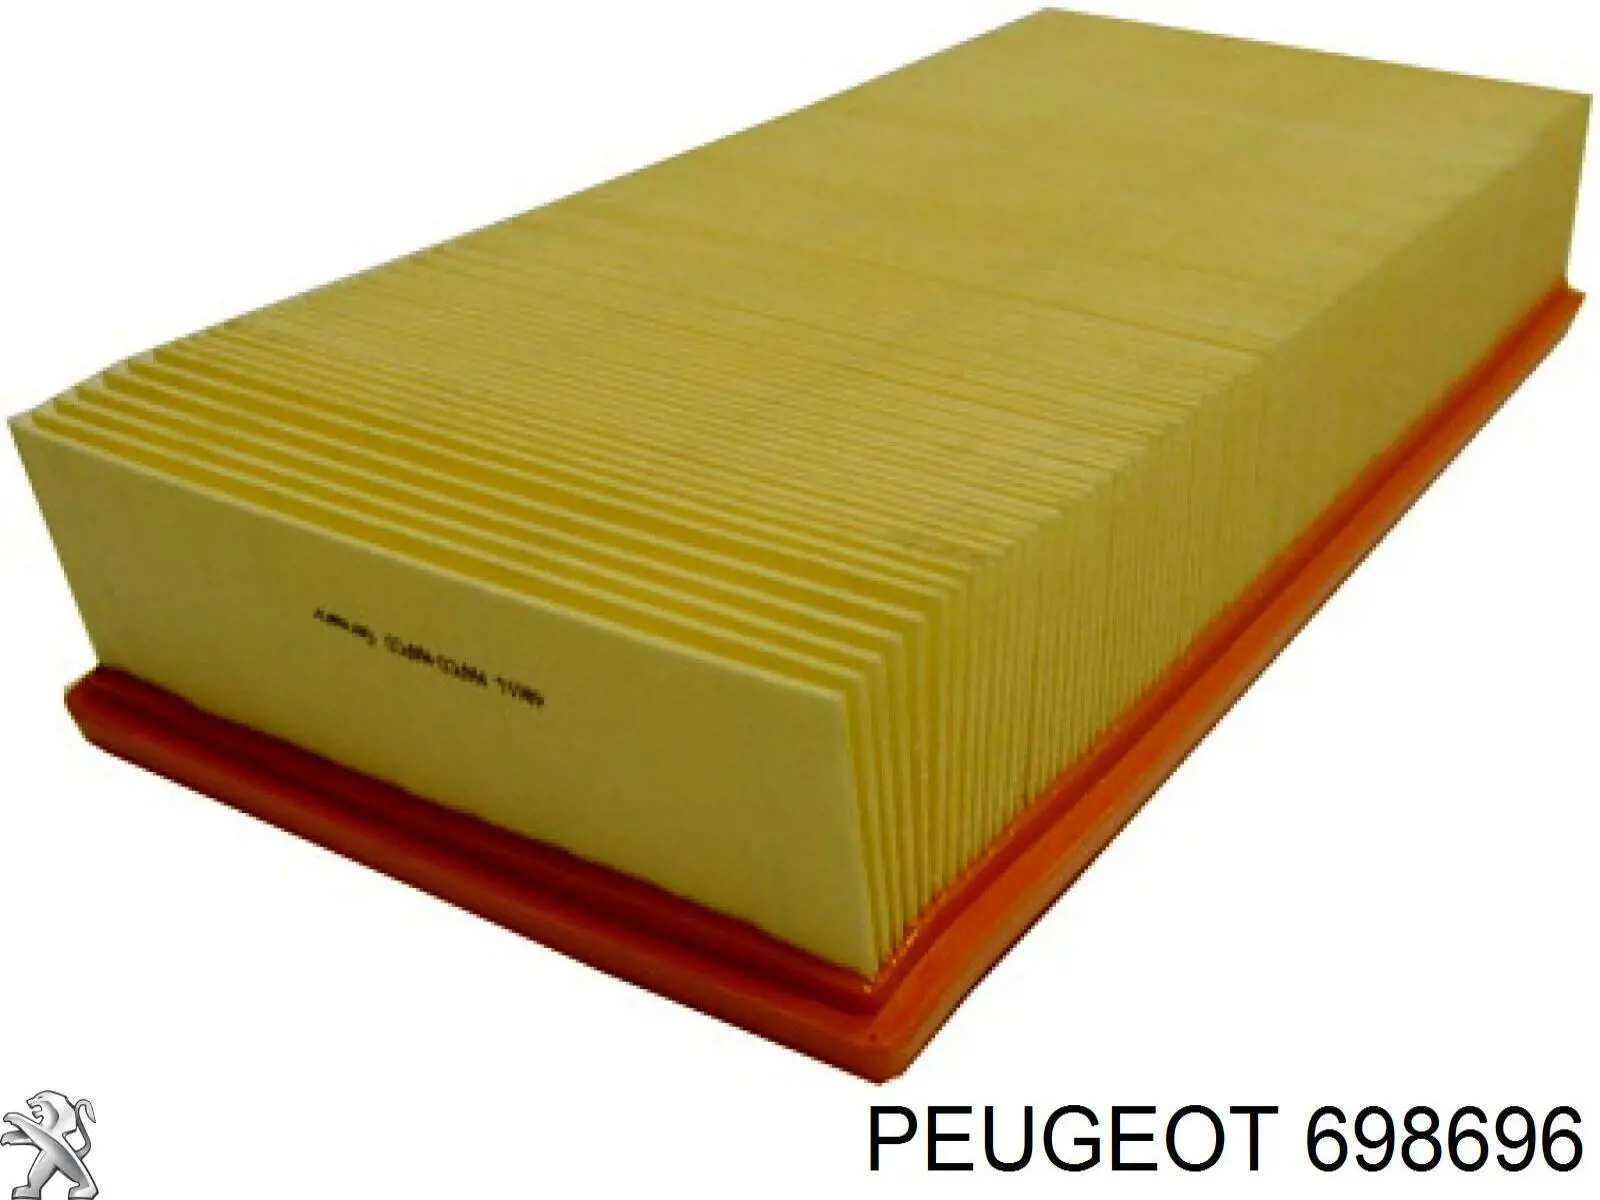 698696 Peugeot/Citroen cableado de retención (soporte)